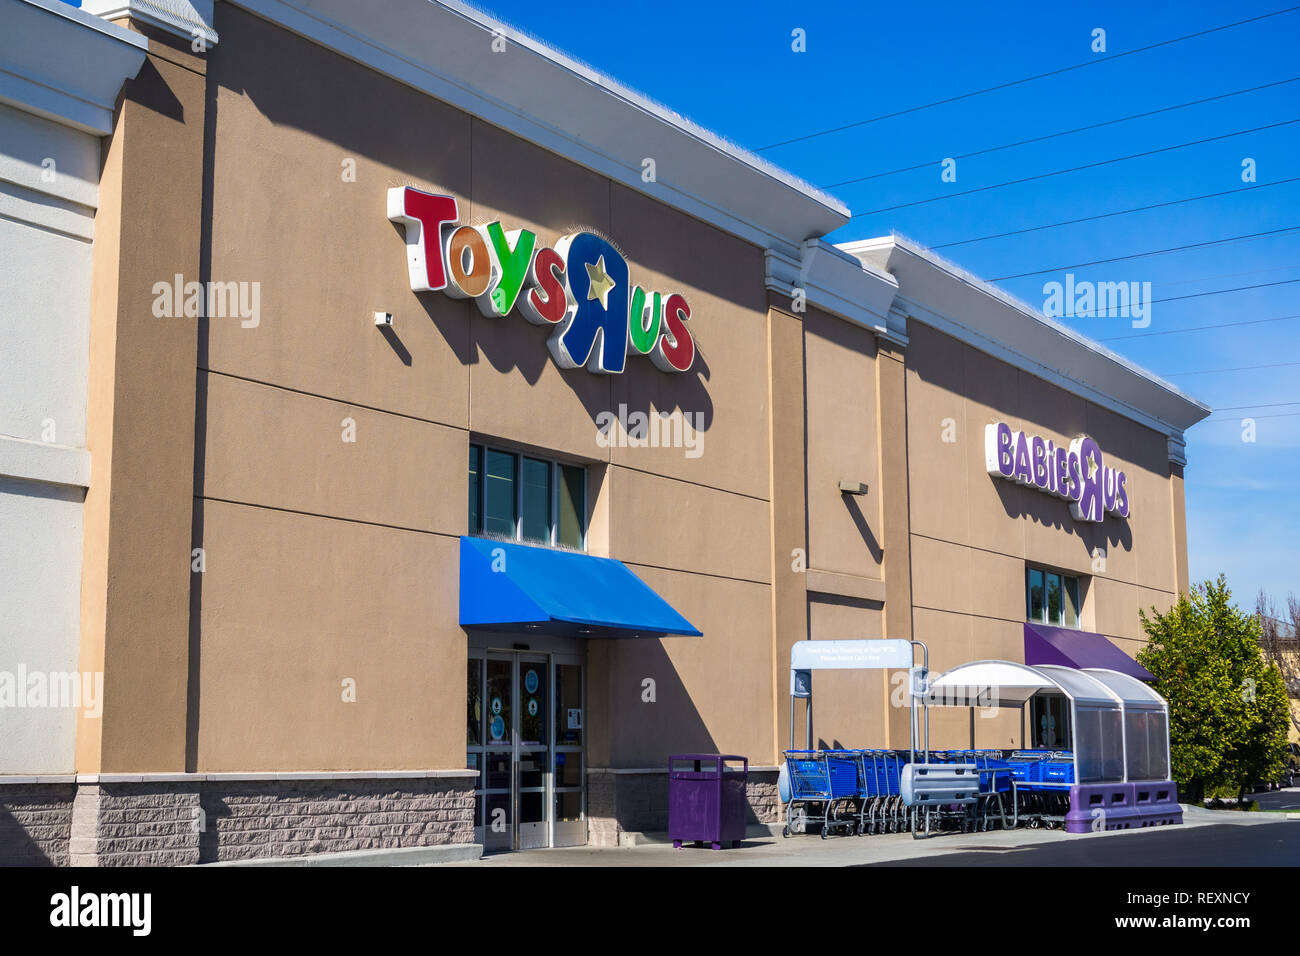 30 janvier 2018 Sunnyvale / CA / USA - Toys R Us entrée à l'un des magasins situés dans la région de San Francisco bay area Banque D'Images